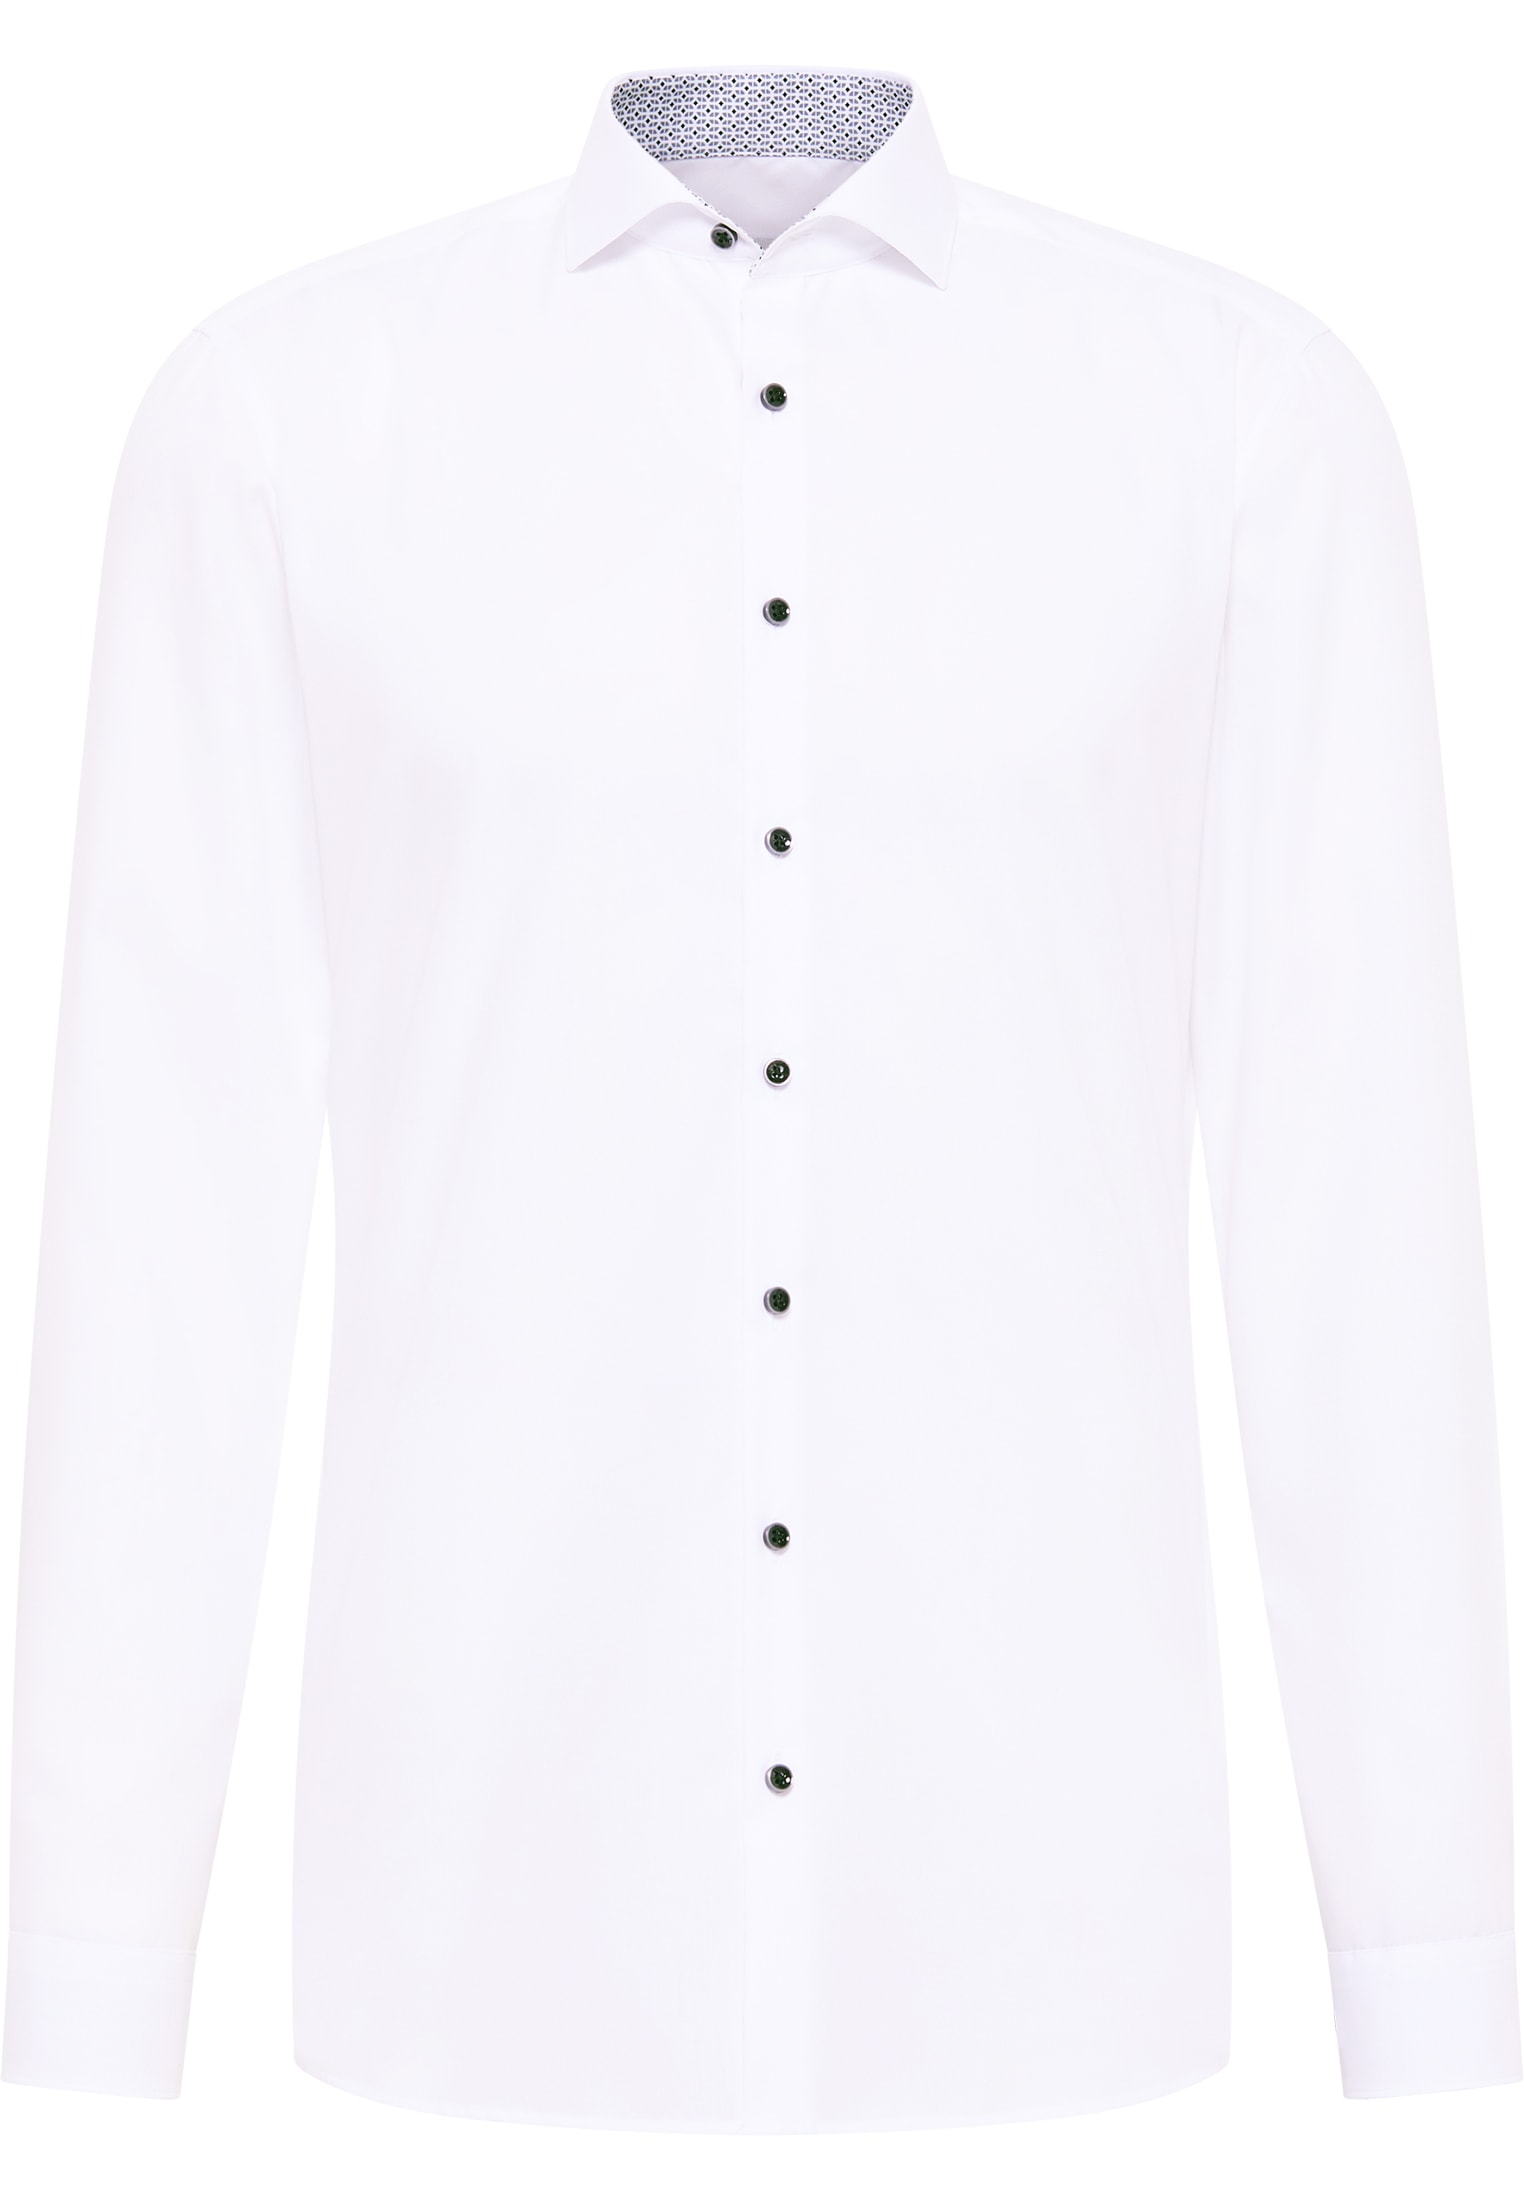 SUPER SLIM Original Shirt in white plain